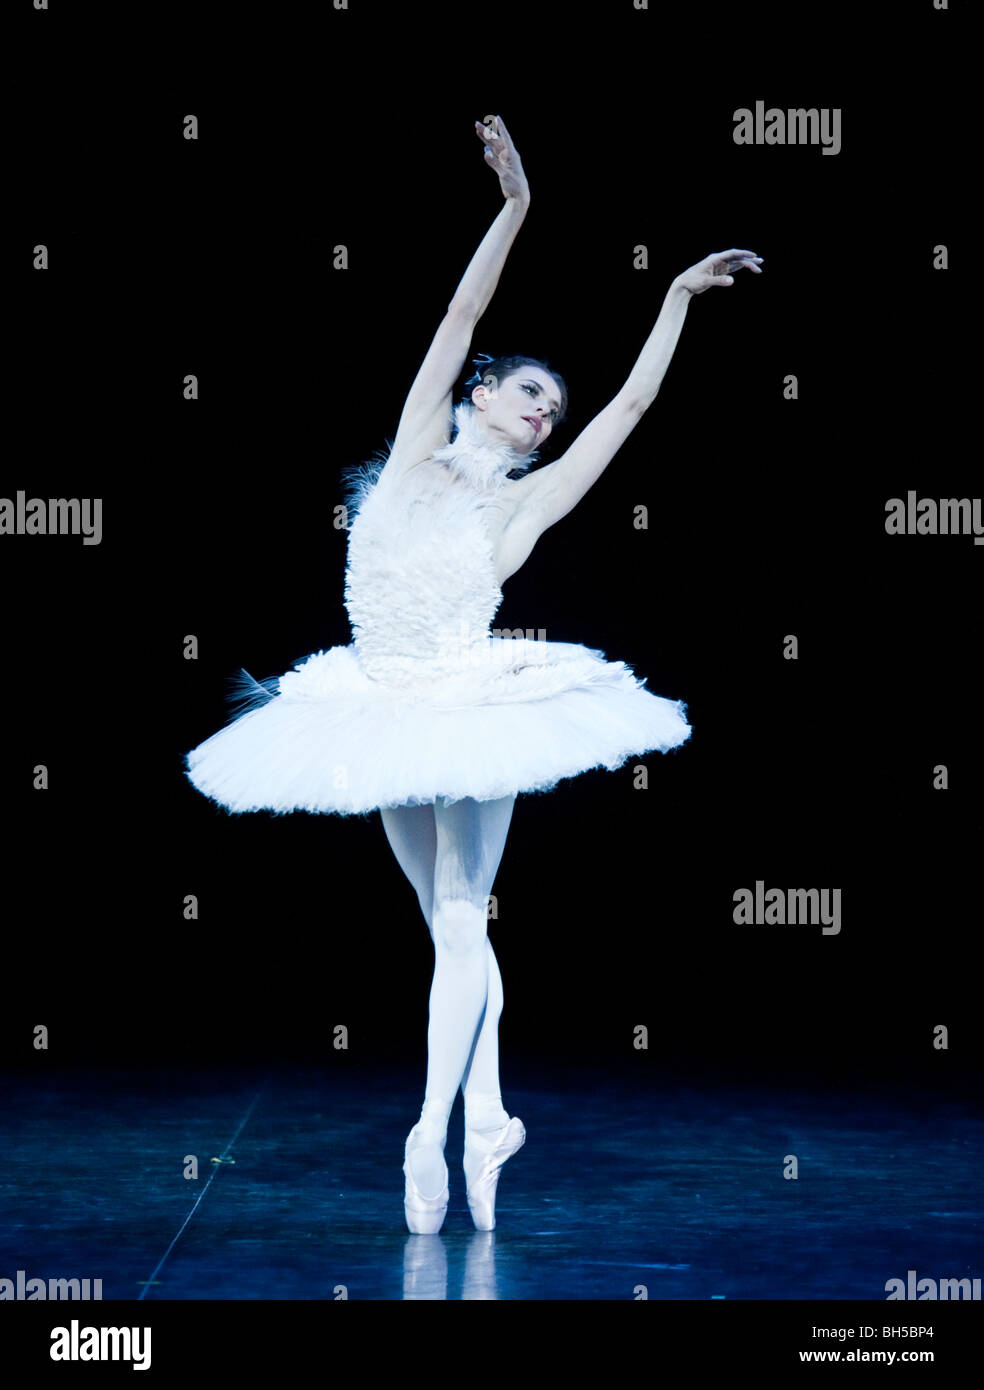 Niña Como Una Bailarina De Ballet En El Tutú Azul, Aislados En Fondo Blanco  Fotos, retratos, imágenes y fotografía de archivo libres de derecho. Image  16898266